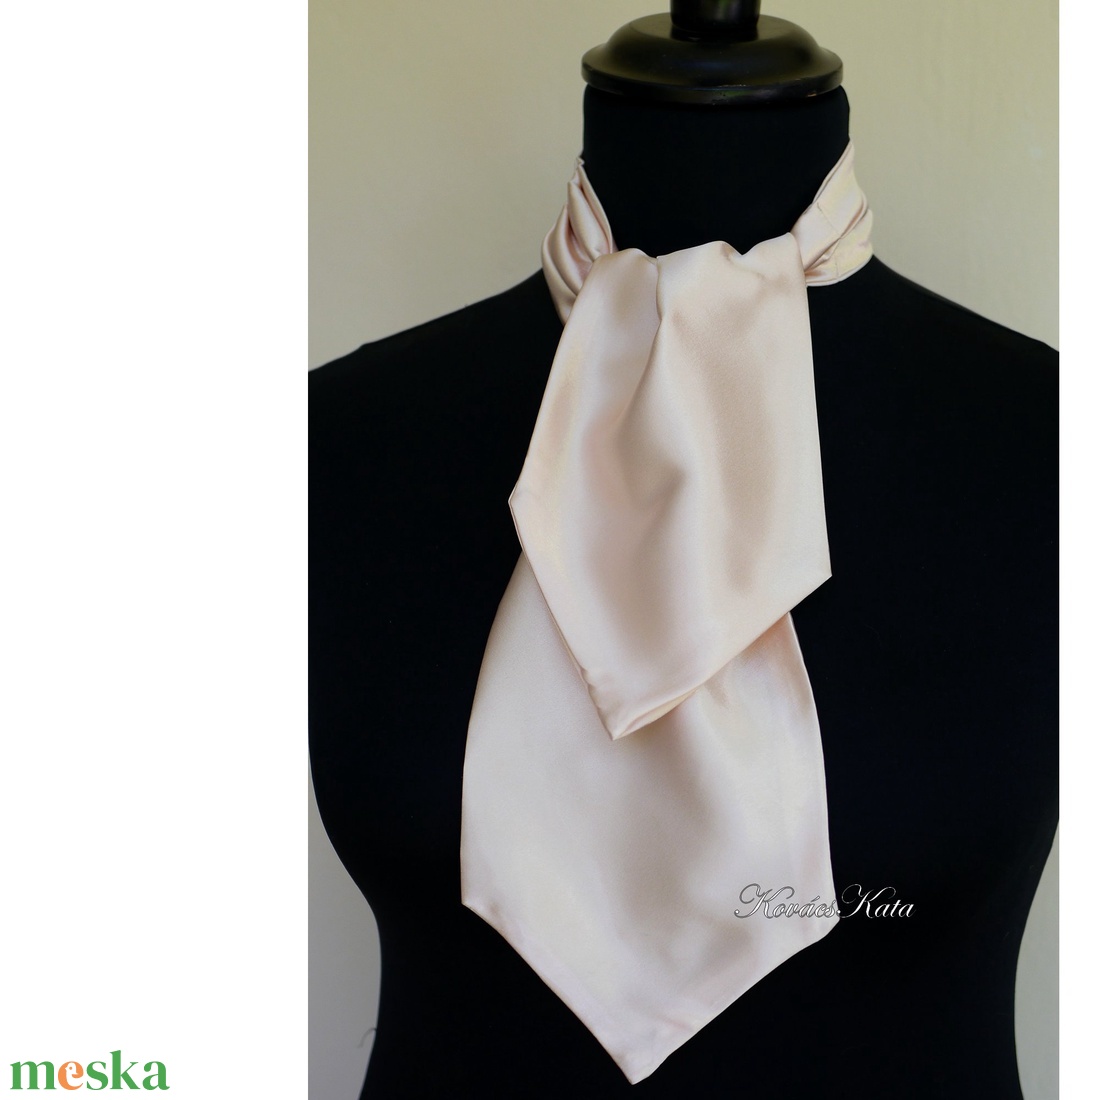 KRAVÁTLI / bézs szatén - selyem nyakkendő, sál, sál-kendő, nyaksál női/férfi - esküvő - kiegészítők - nyakkendő - Meska.hu